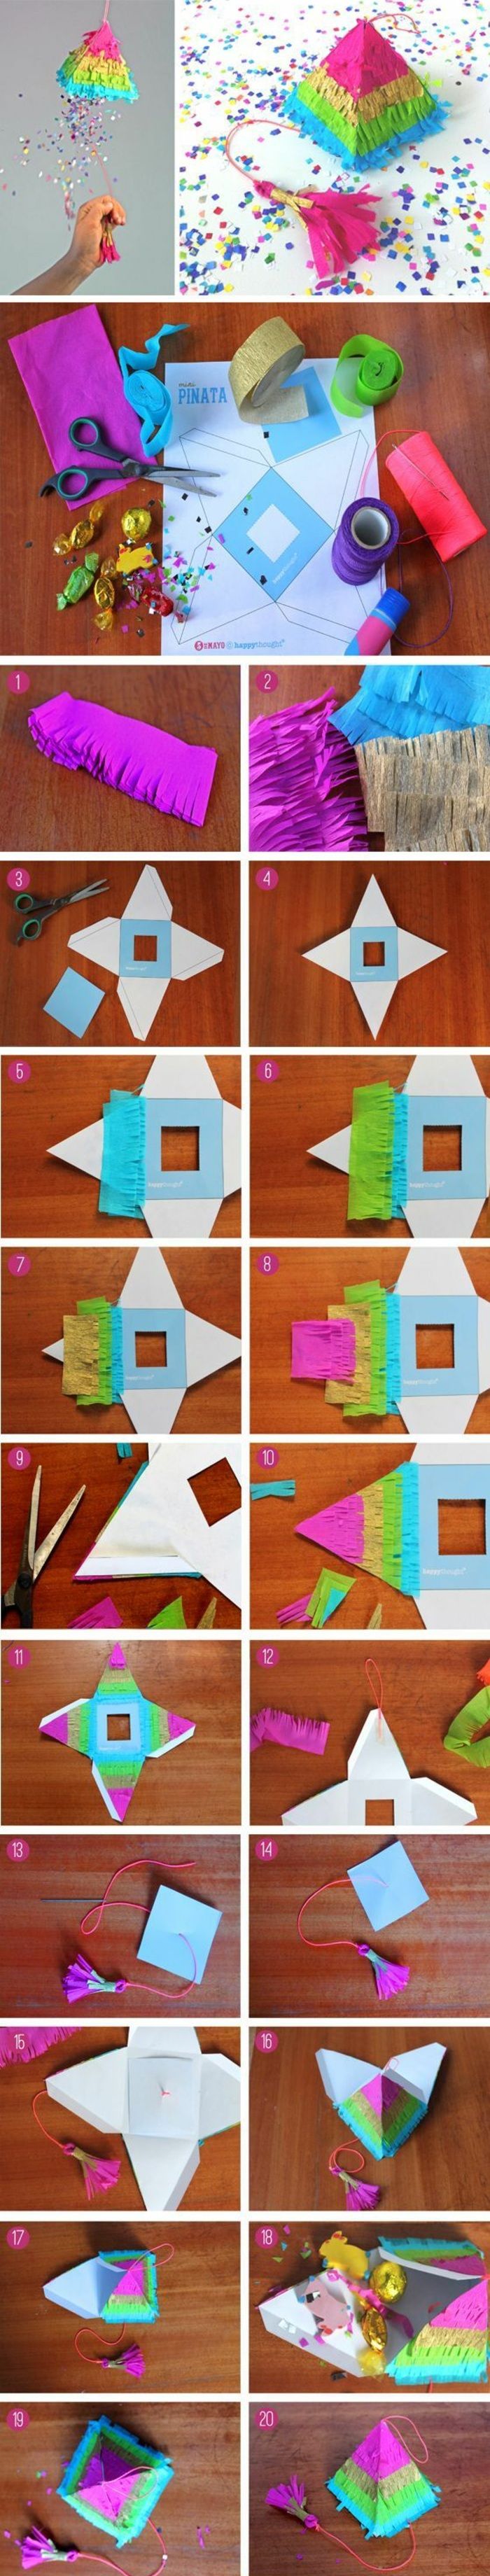 Faceți o piramidă mică de carton, hârtie colorată, foarfece